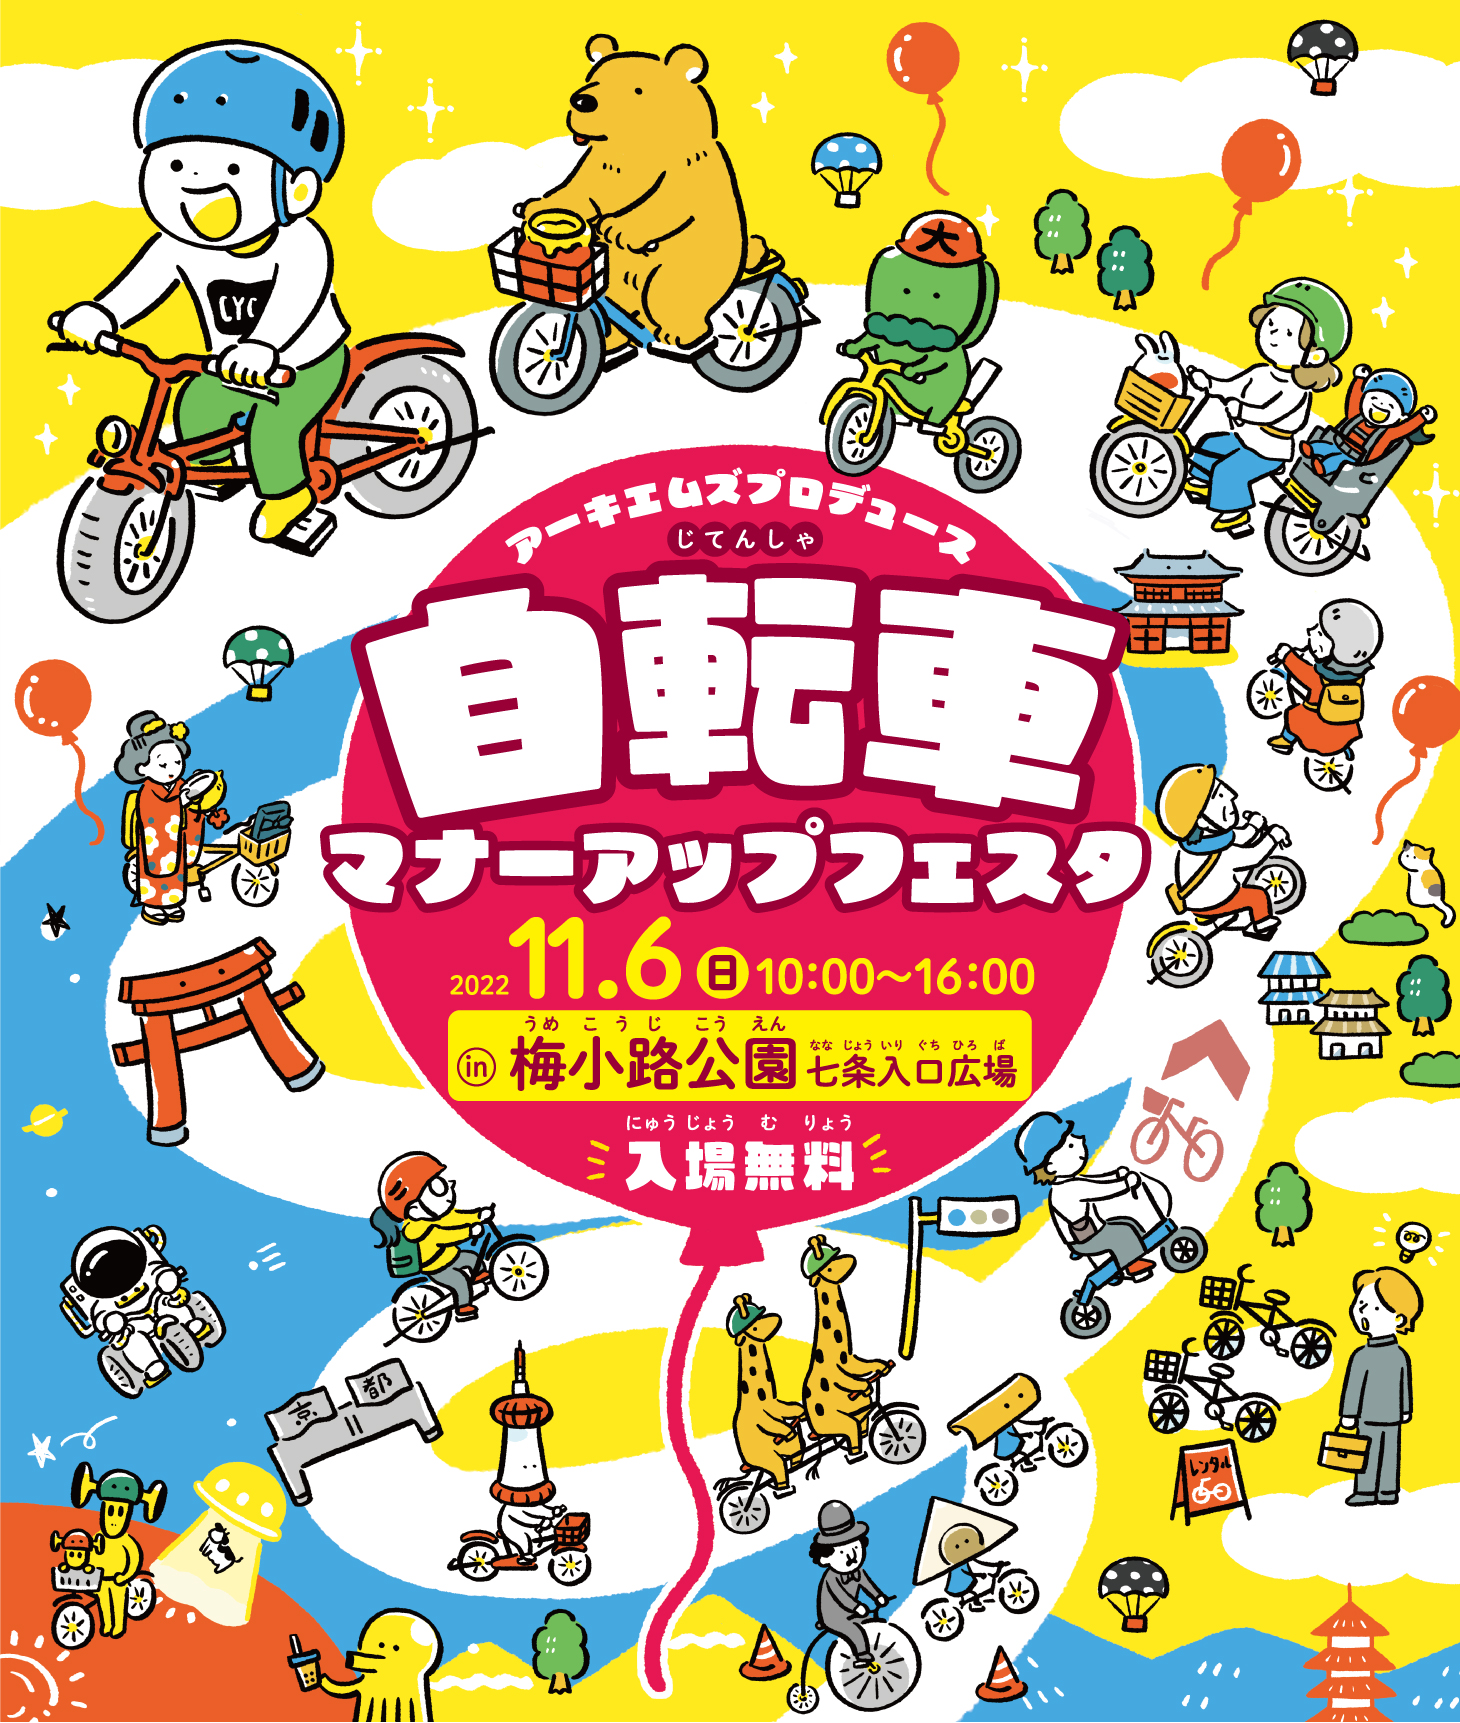 「アーキエムズプロデュース 自転車マナーアップフェスタ in Kyoto」